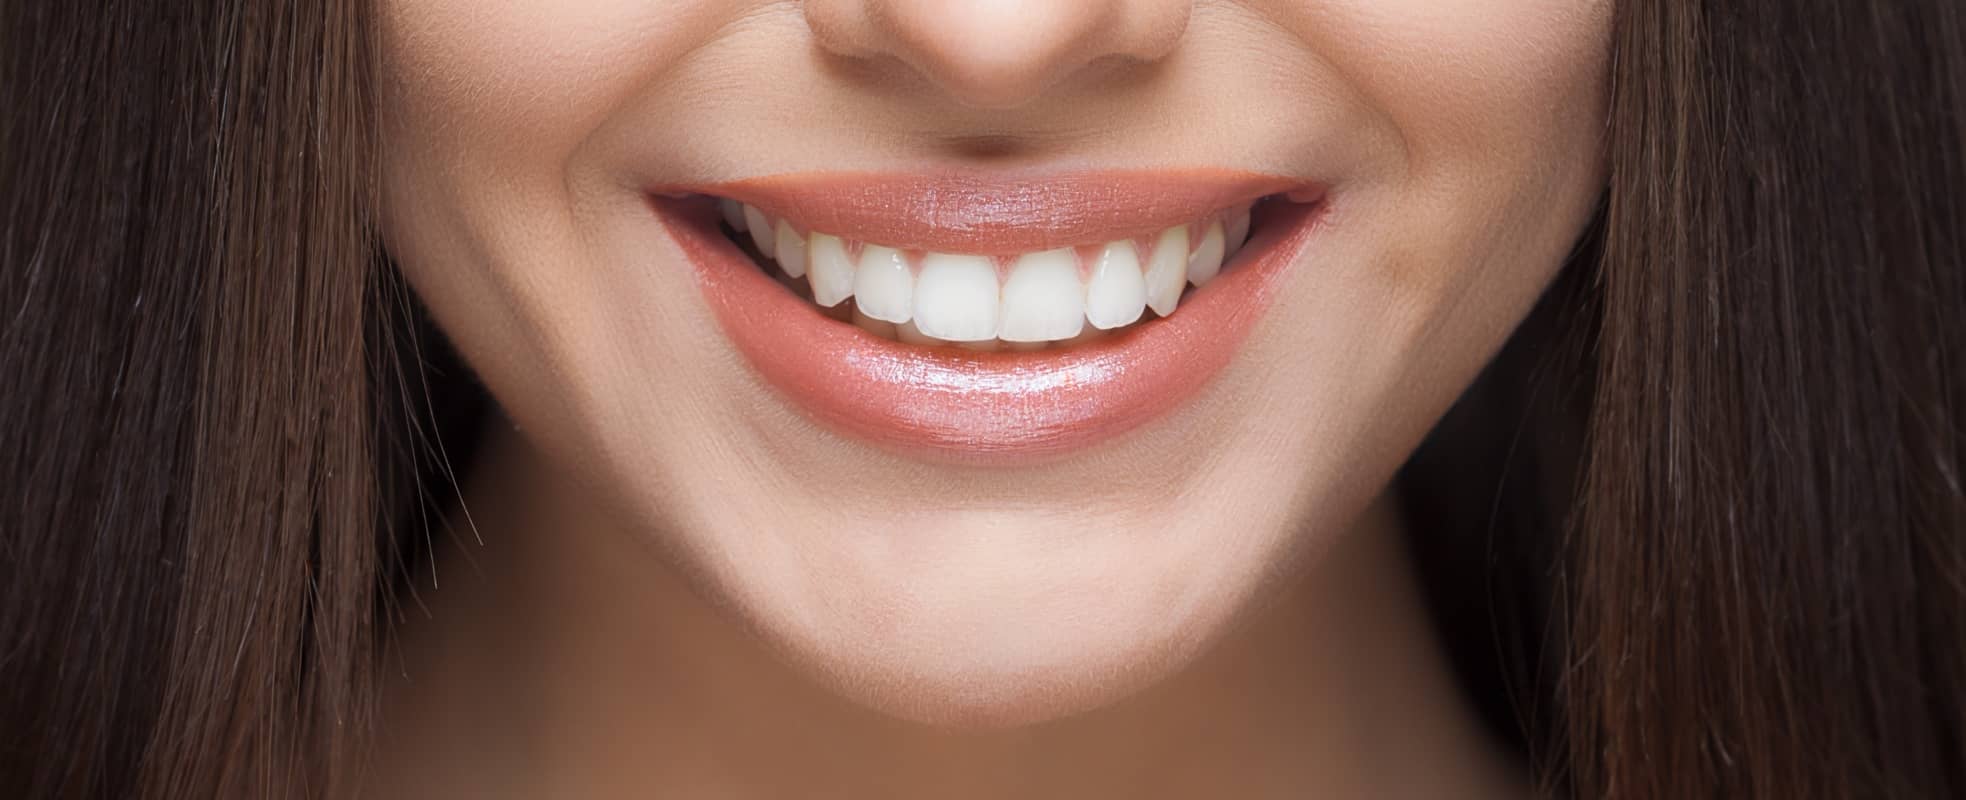 Les résultats des implants dentaires offrent-ils un sourire naturel ? | Dr Elhyani | Paris